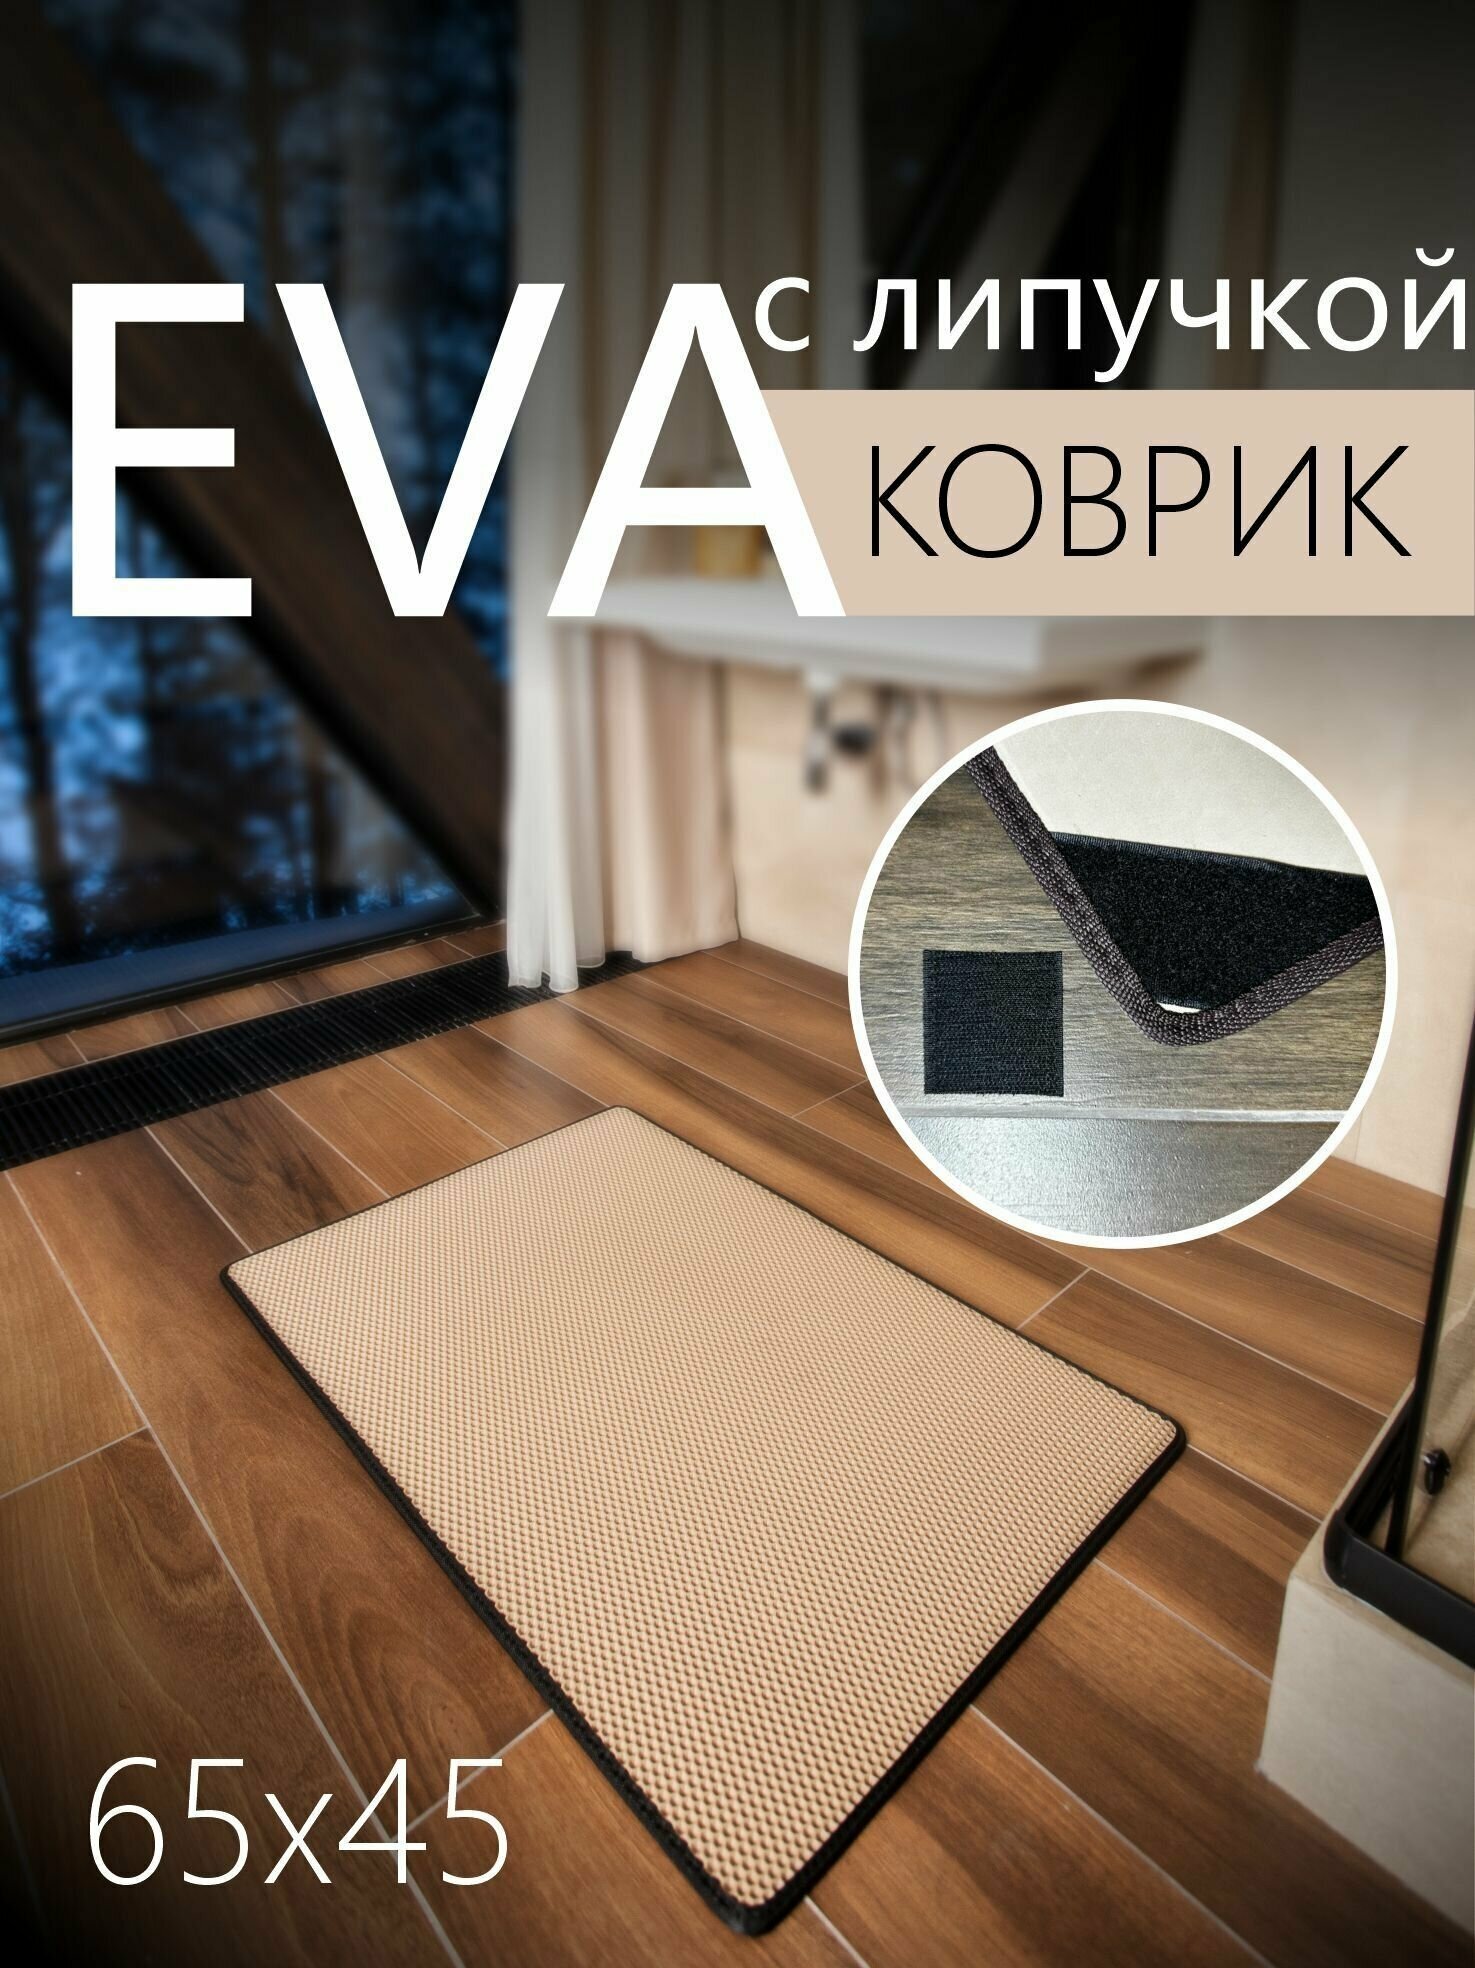 Коврик придверный противоскользящий EVA ЭВА универсальный 65х45 сантиметров. Липучки для фиксации. Соты Бежевый с черной окантовкой